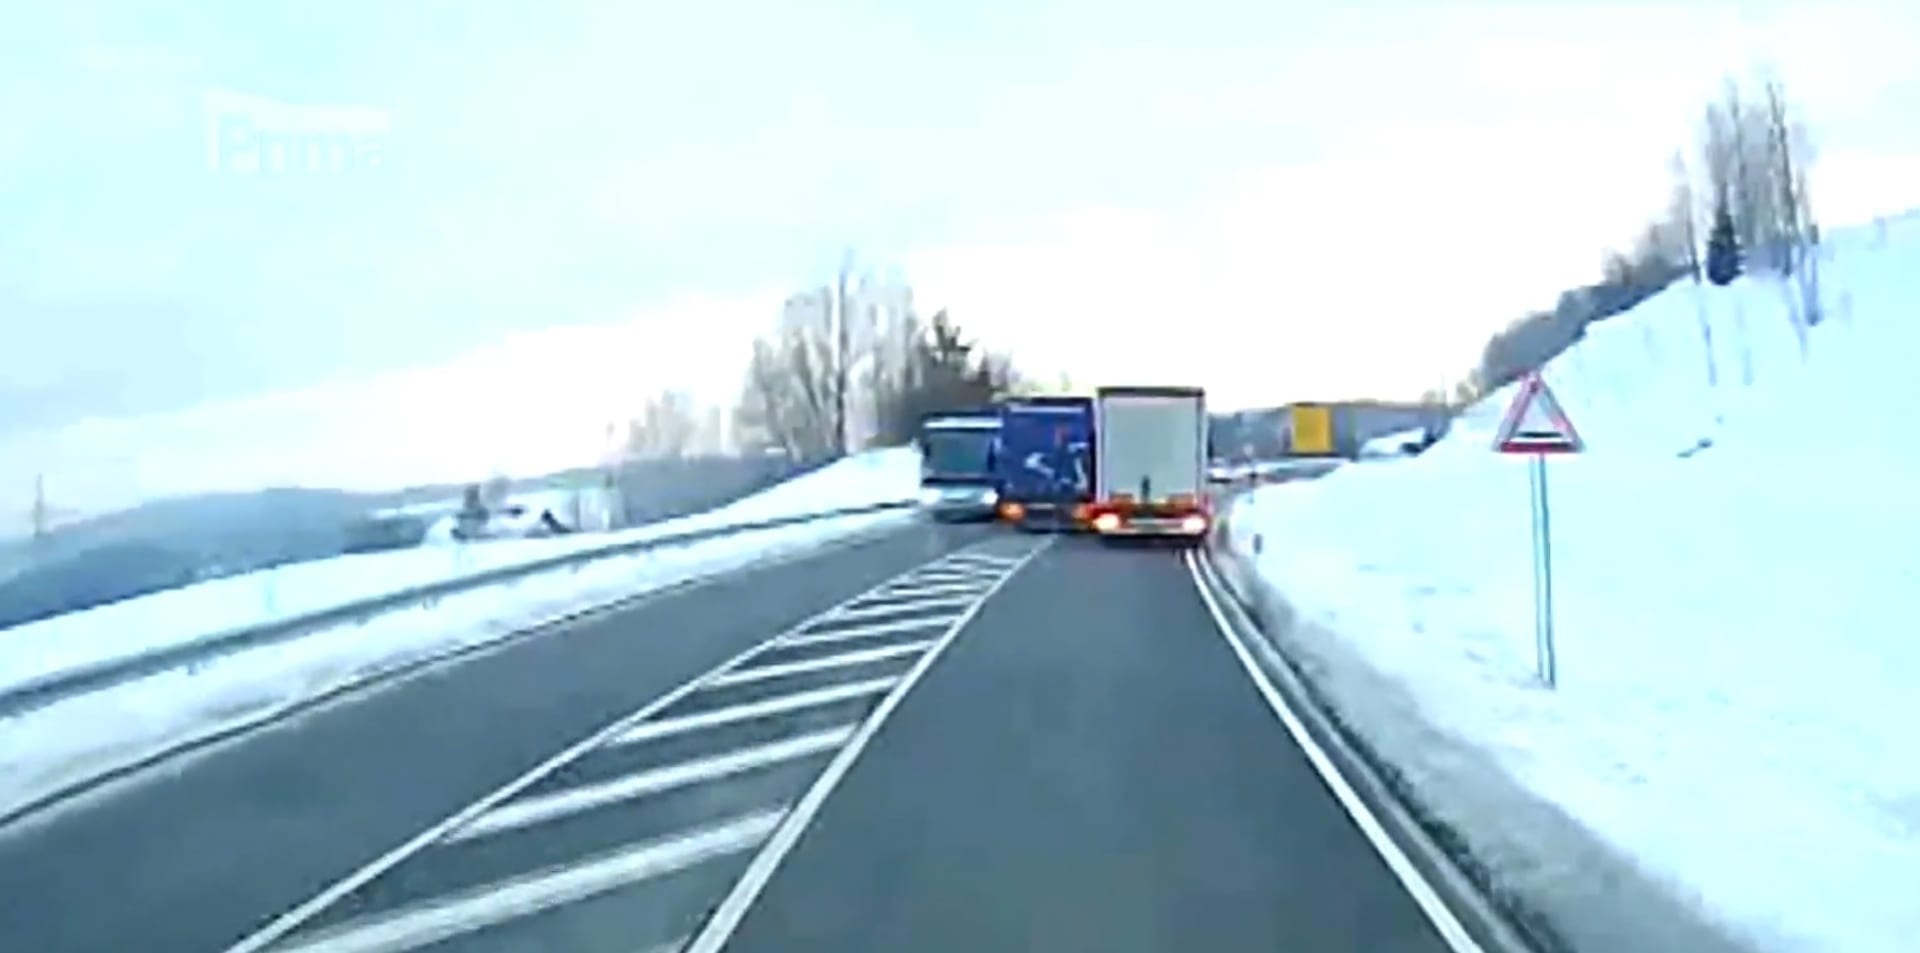 Nebezpečný předjížděcí manévr českého řidiče